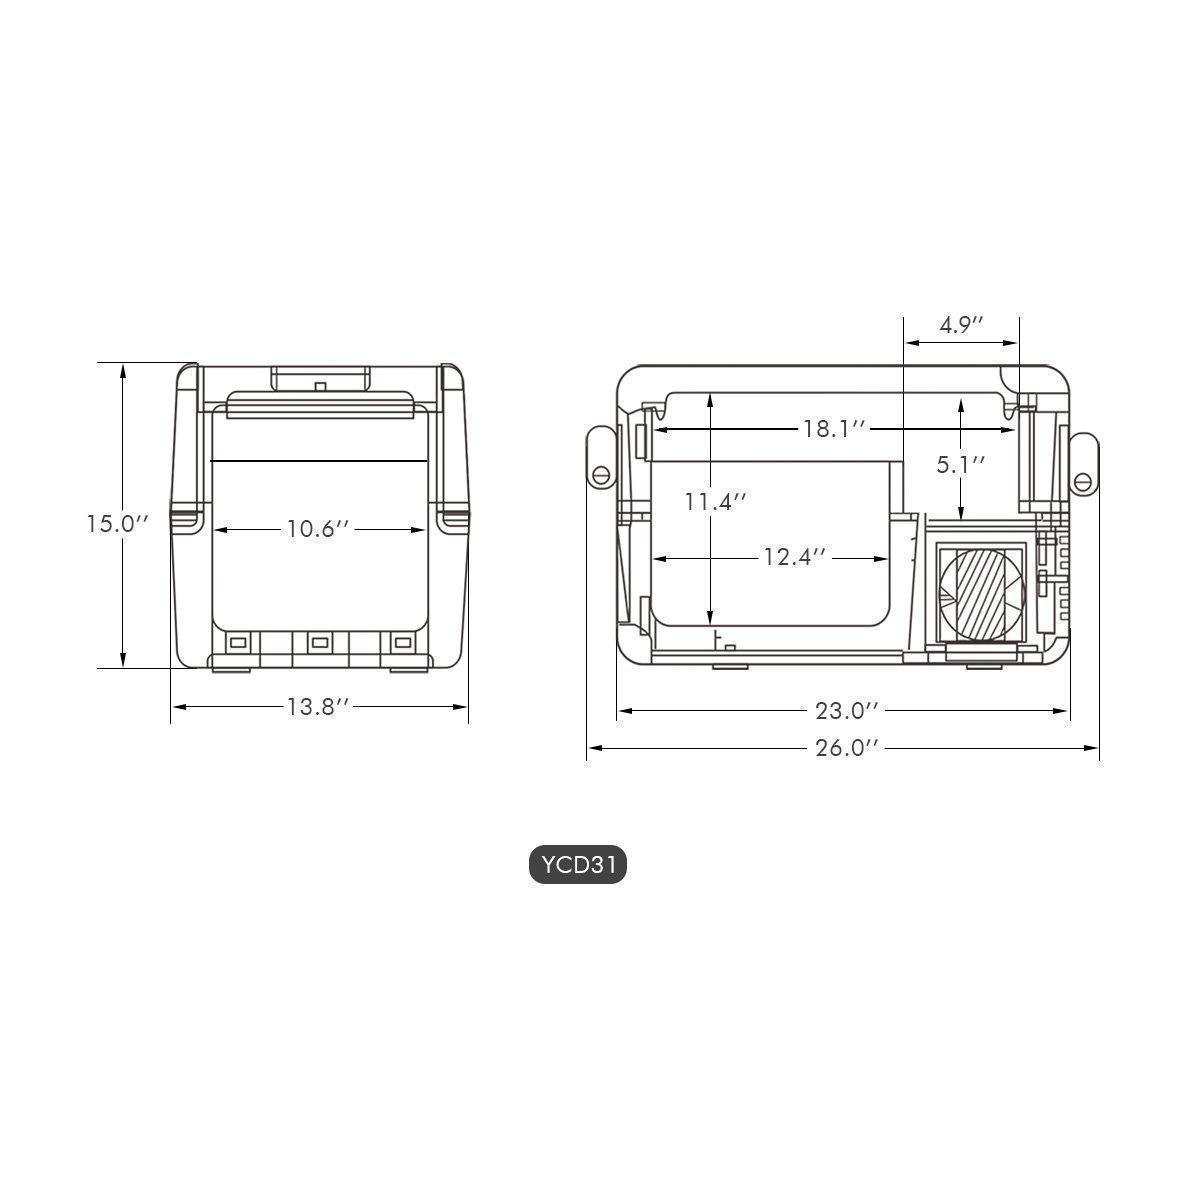  ICECO - Portable Fridge 12Volt Refrigerator –  ICECOFREEZER